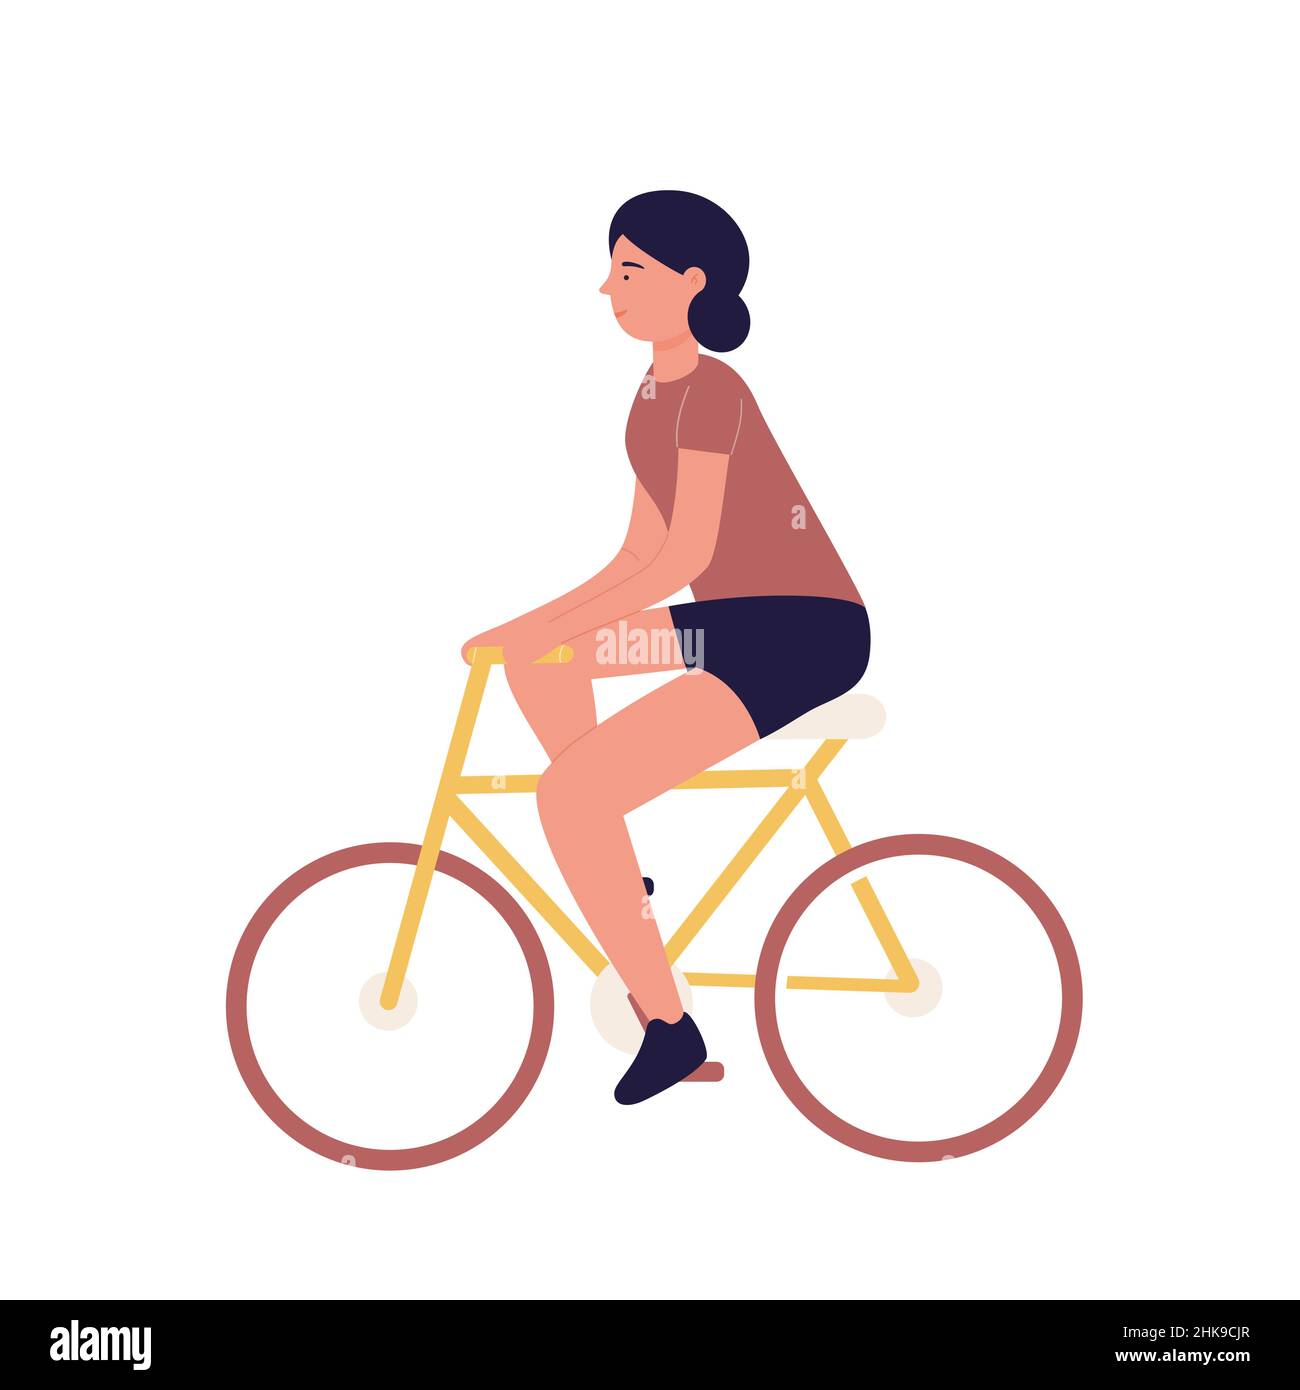 Junge dunkelhaarige Dame, die Fahrrad fährt und Zeit im Freien verbringt. Erholung und gesunde Sportaktivitäten Cartoon-Vektor-Illustration Stock Vektor